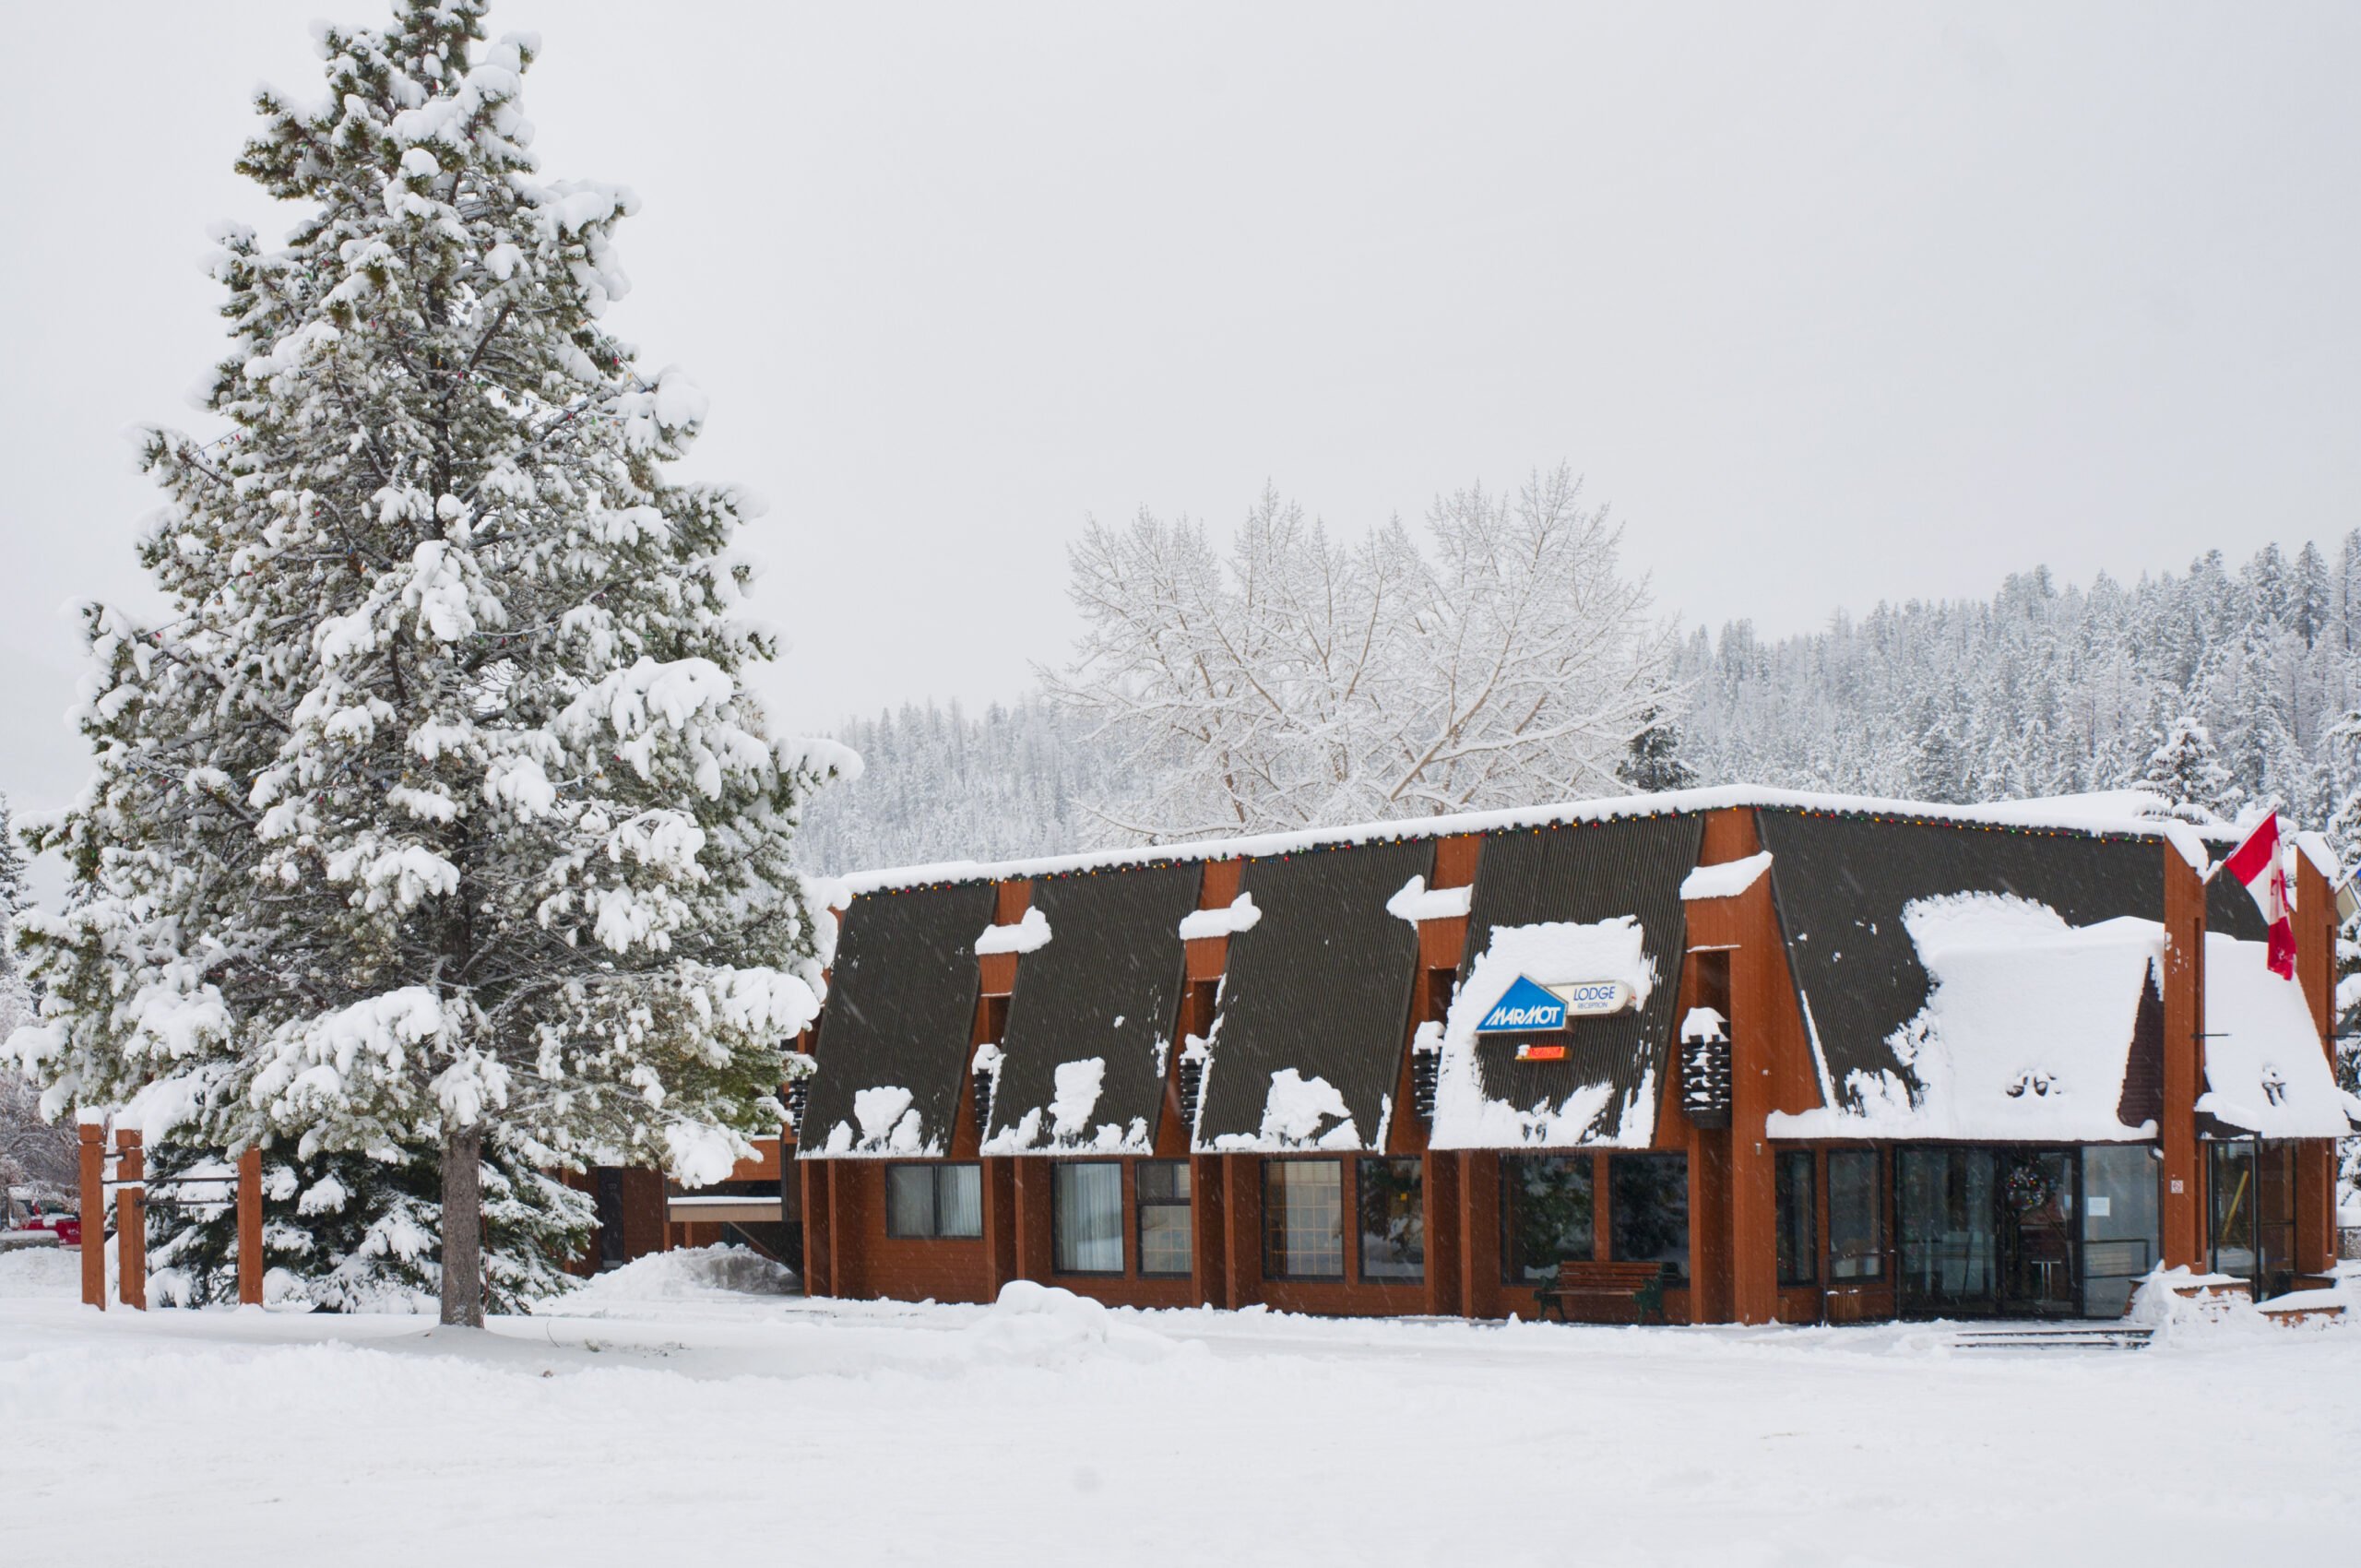 Marmot Lodge - best hotels in jasper